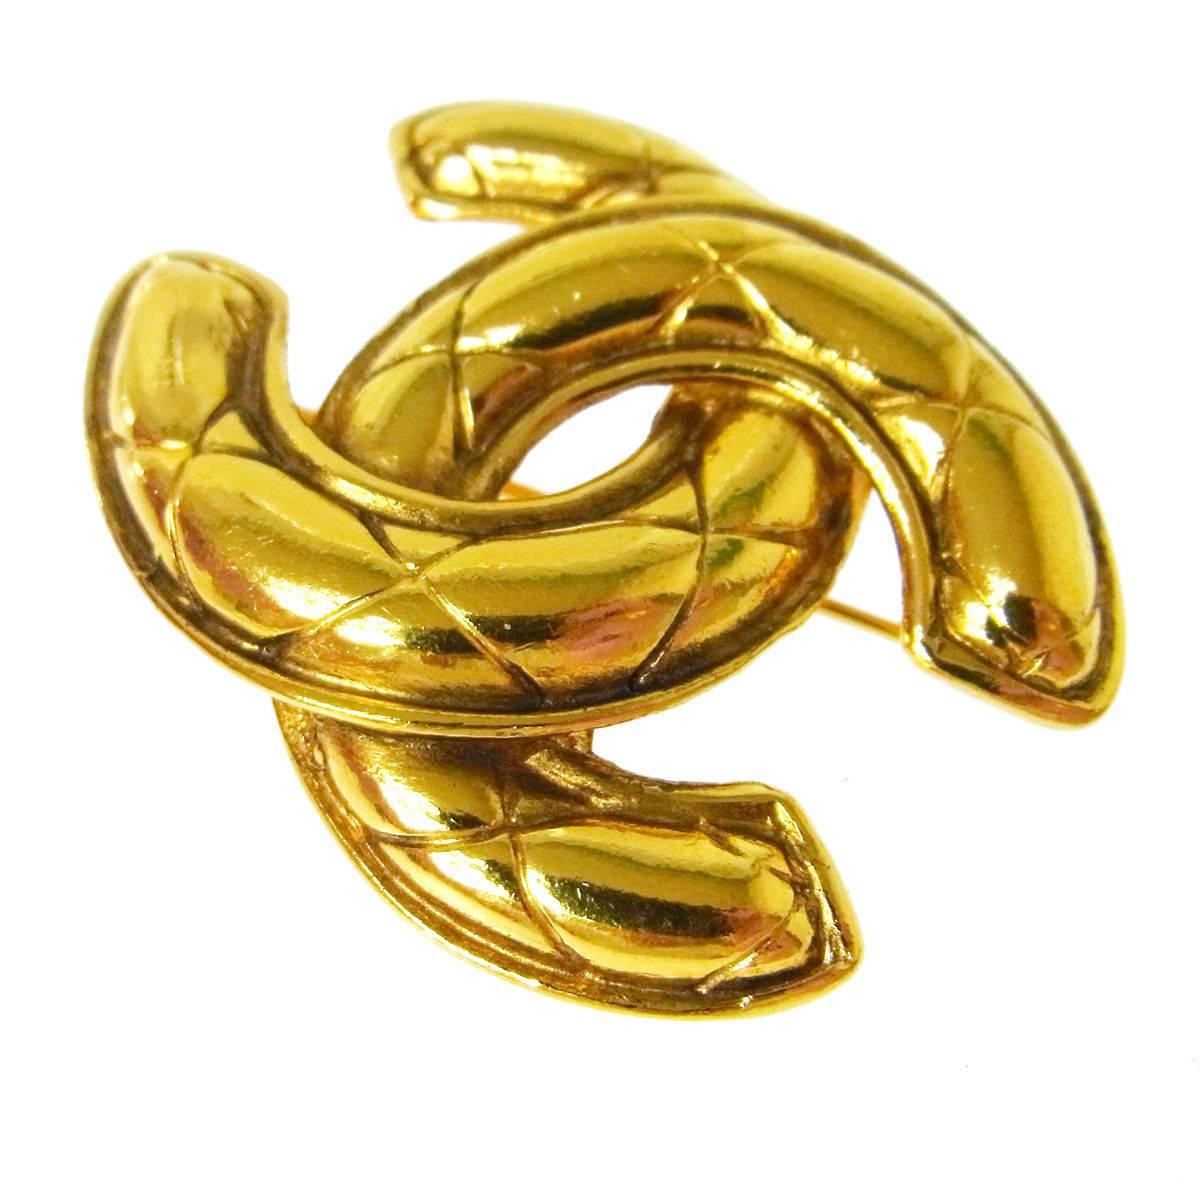 gold chanel brooch